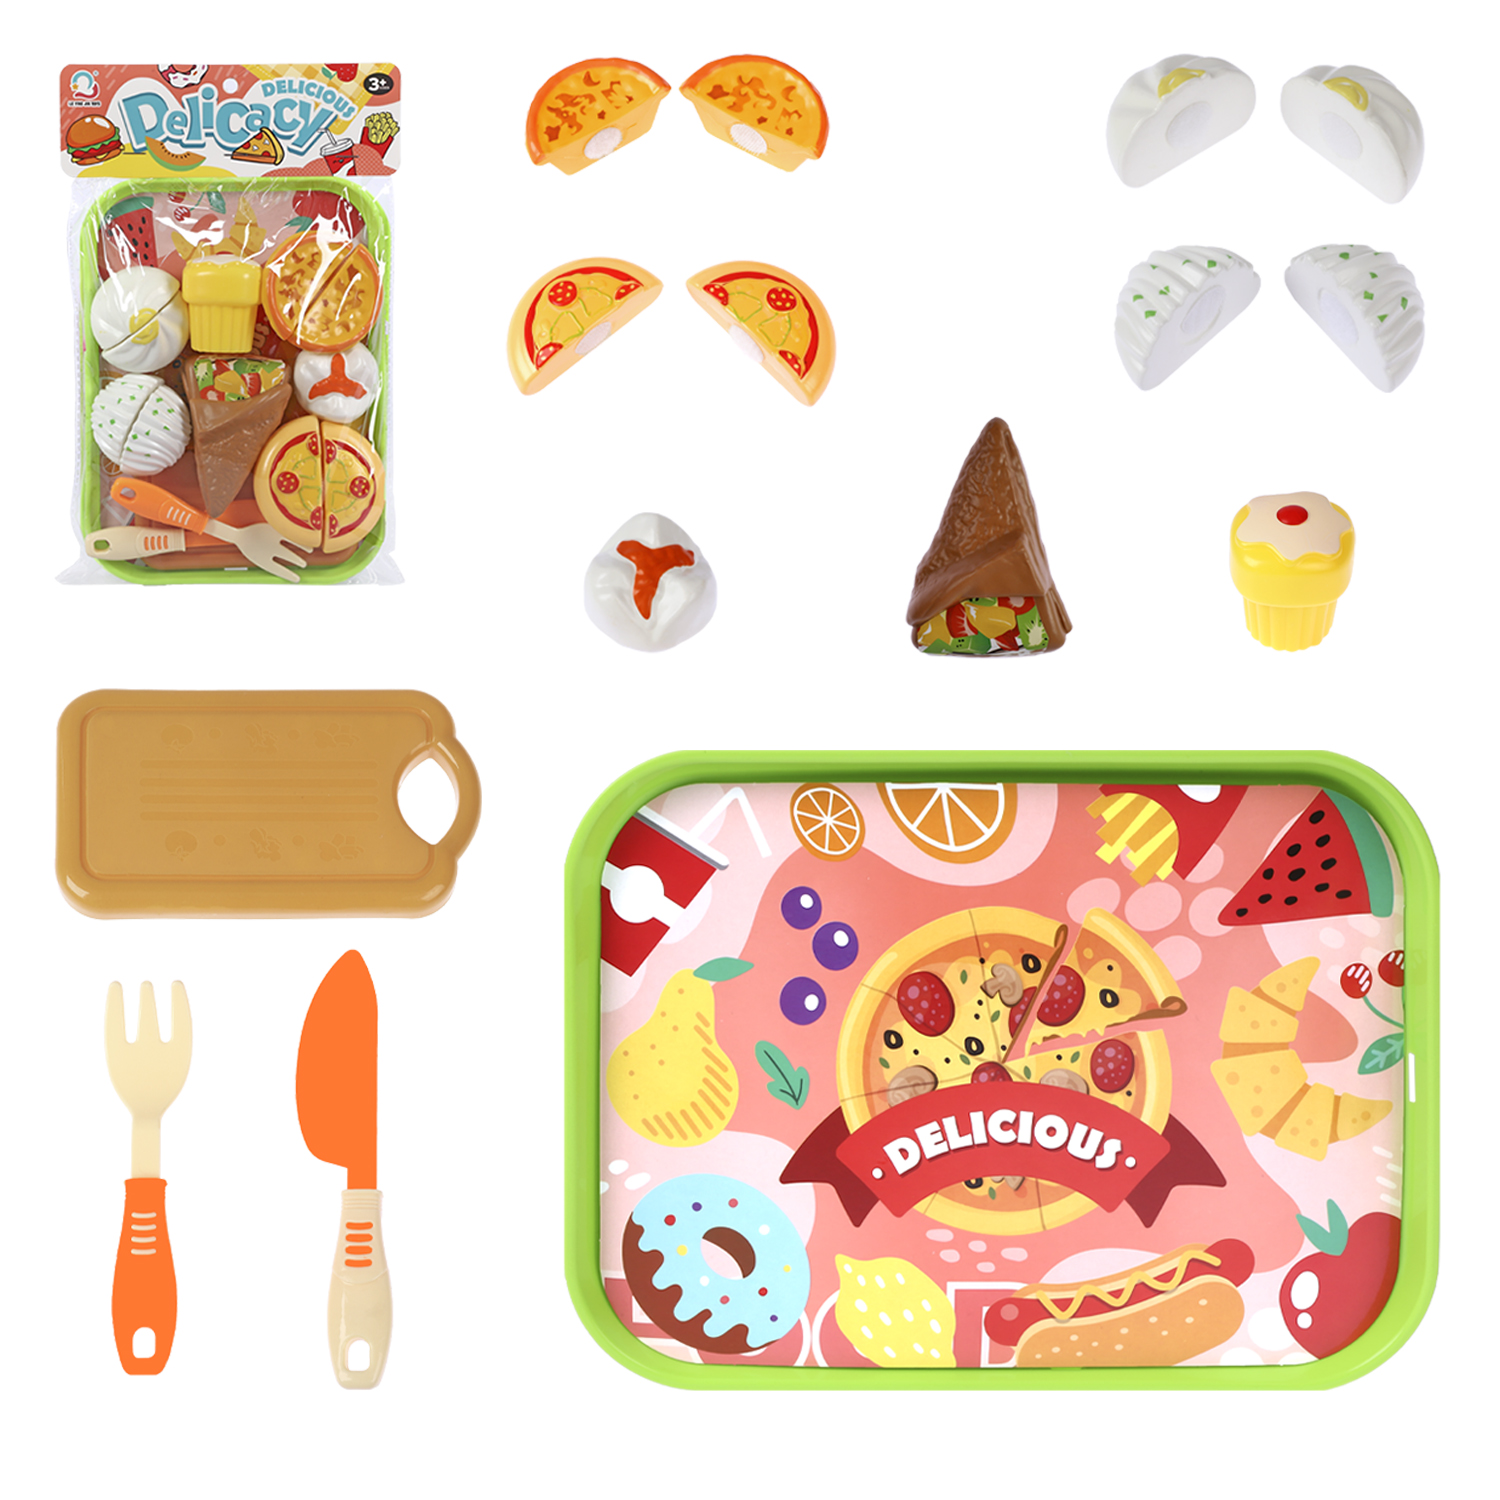 Детский игровой набор Amore Bello продуктов и посуды, JB0211415